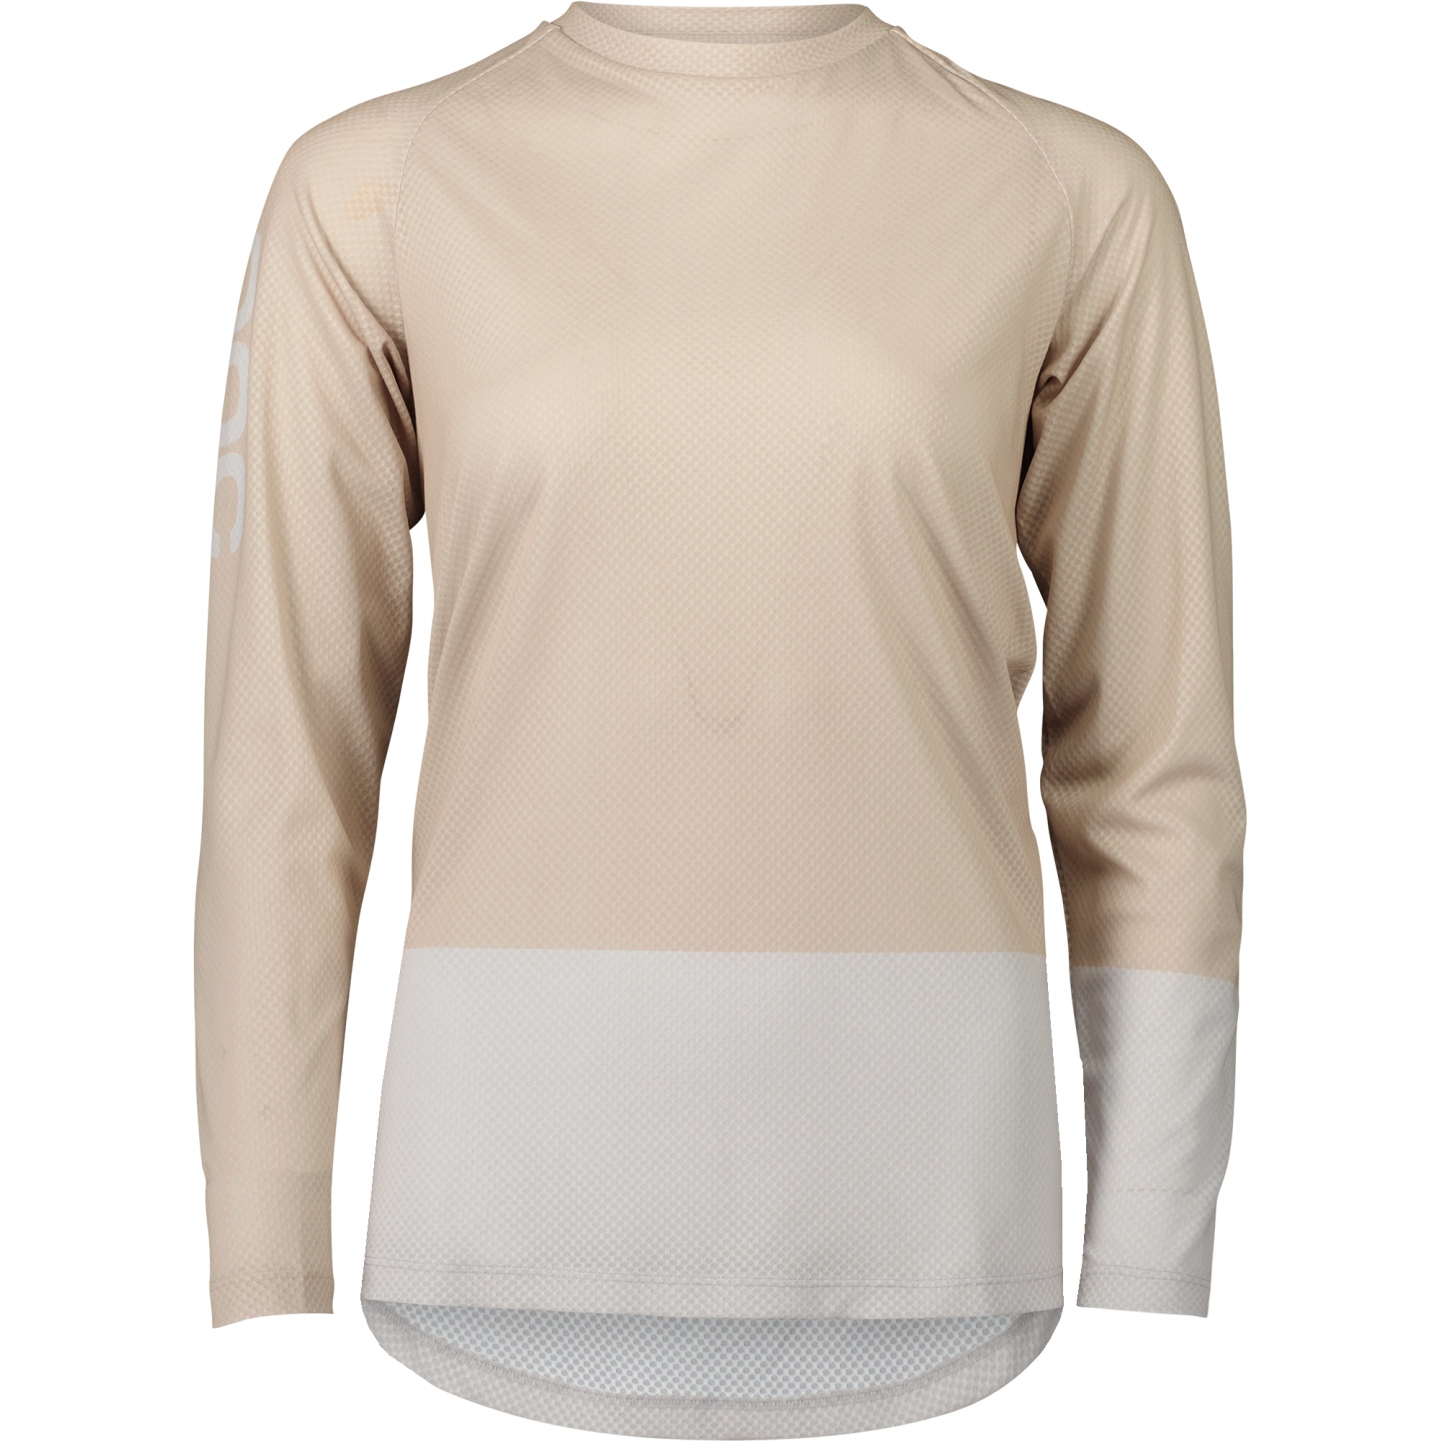 Productfoto van POC MTB Pure Fietsshirt met Lange Mouwen Dames - 8629 Lt Sandstone Beige/Granite Grey